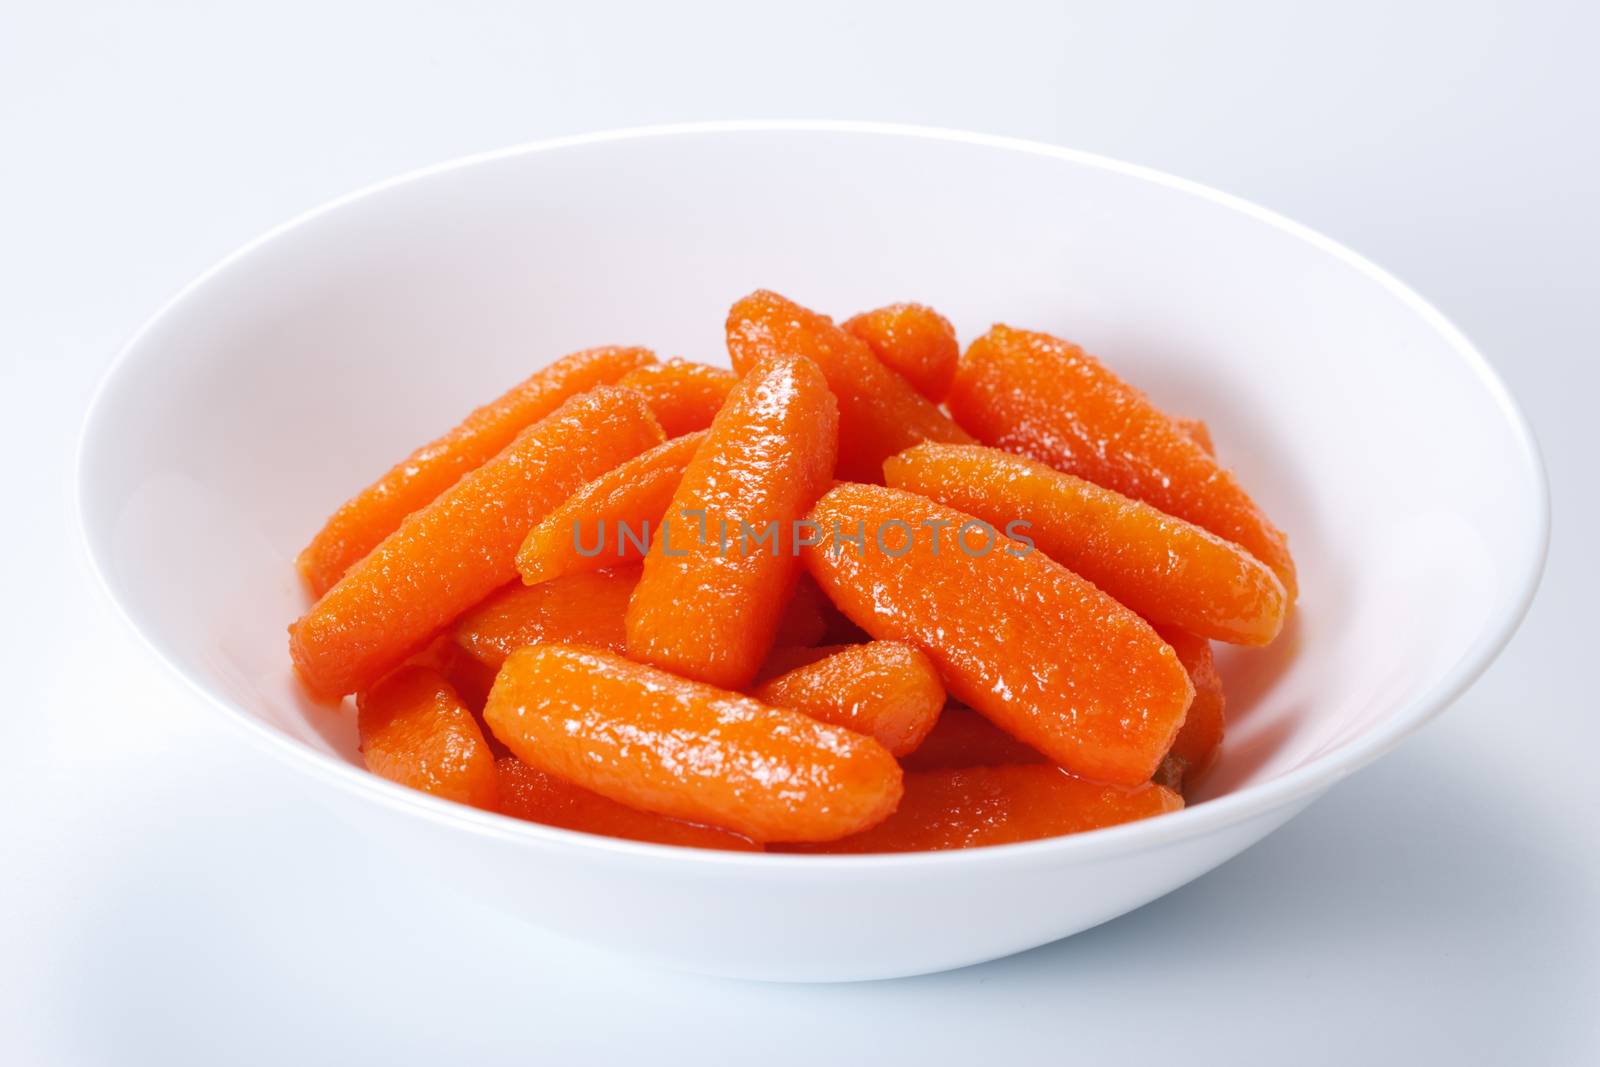 Honey glazed baby carrots in bowl